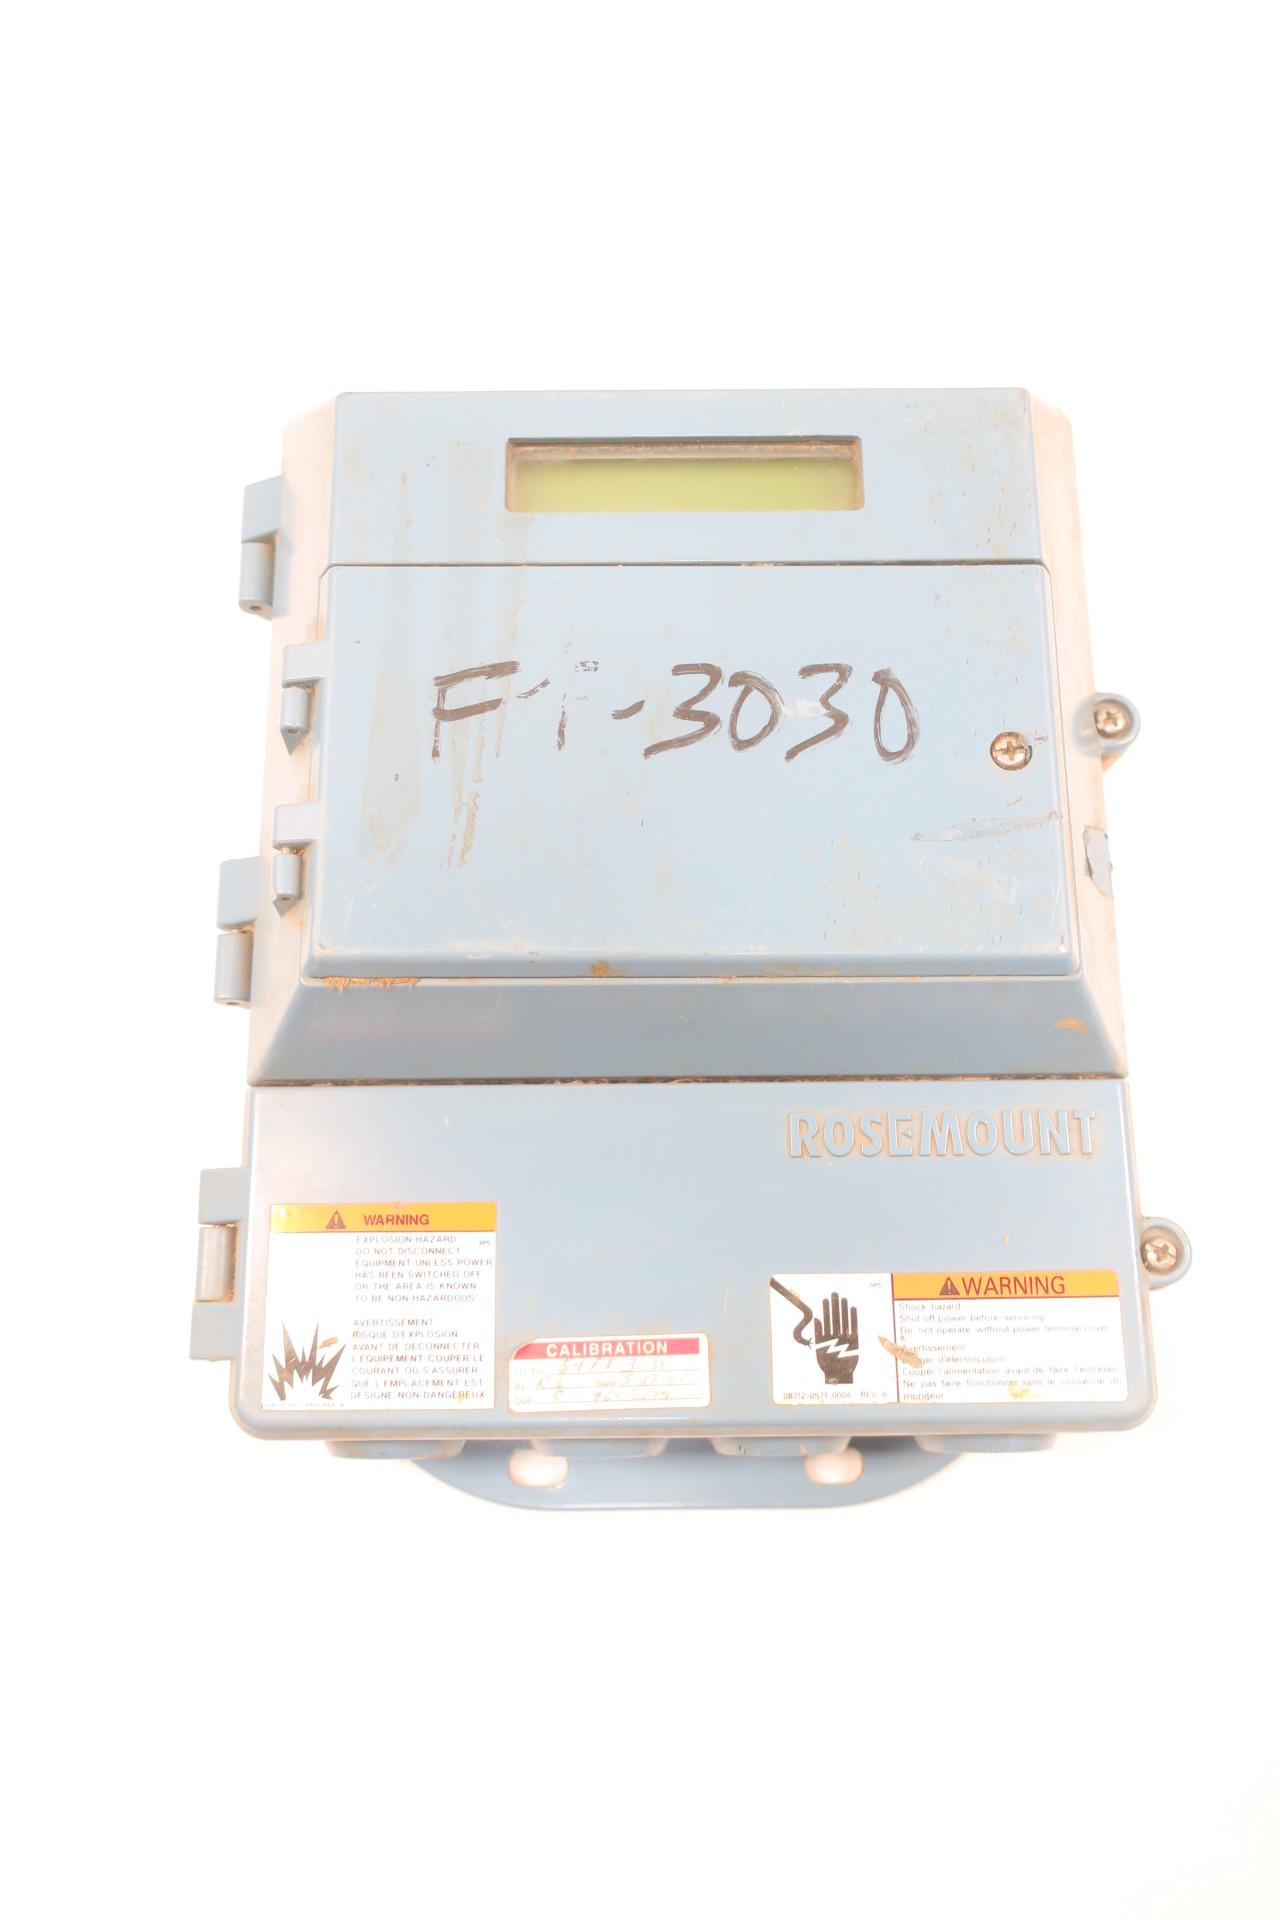 Rosemount Smart Family Magnetic Flow Transmitter  8712HR12N0M4B6 